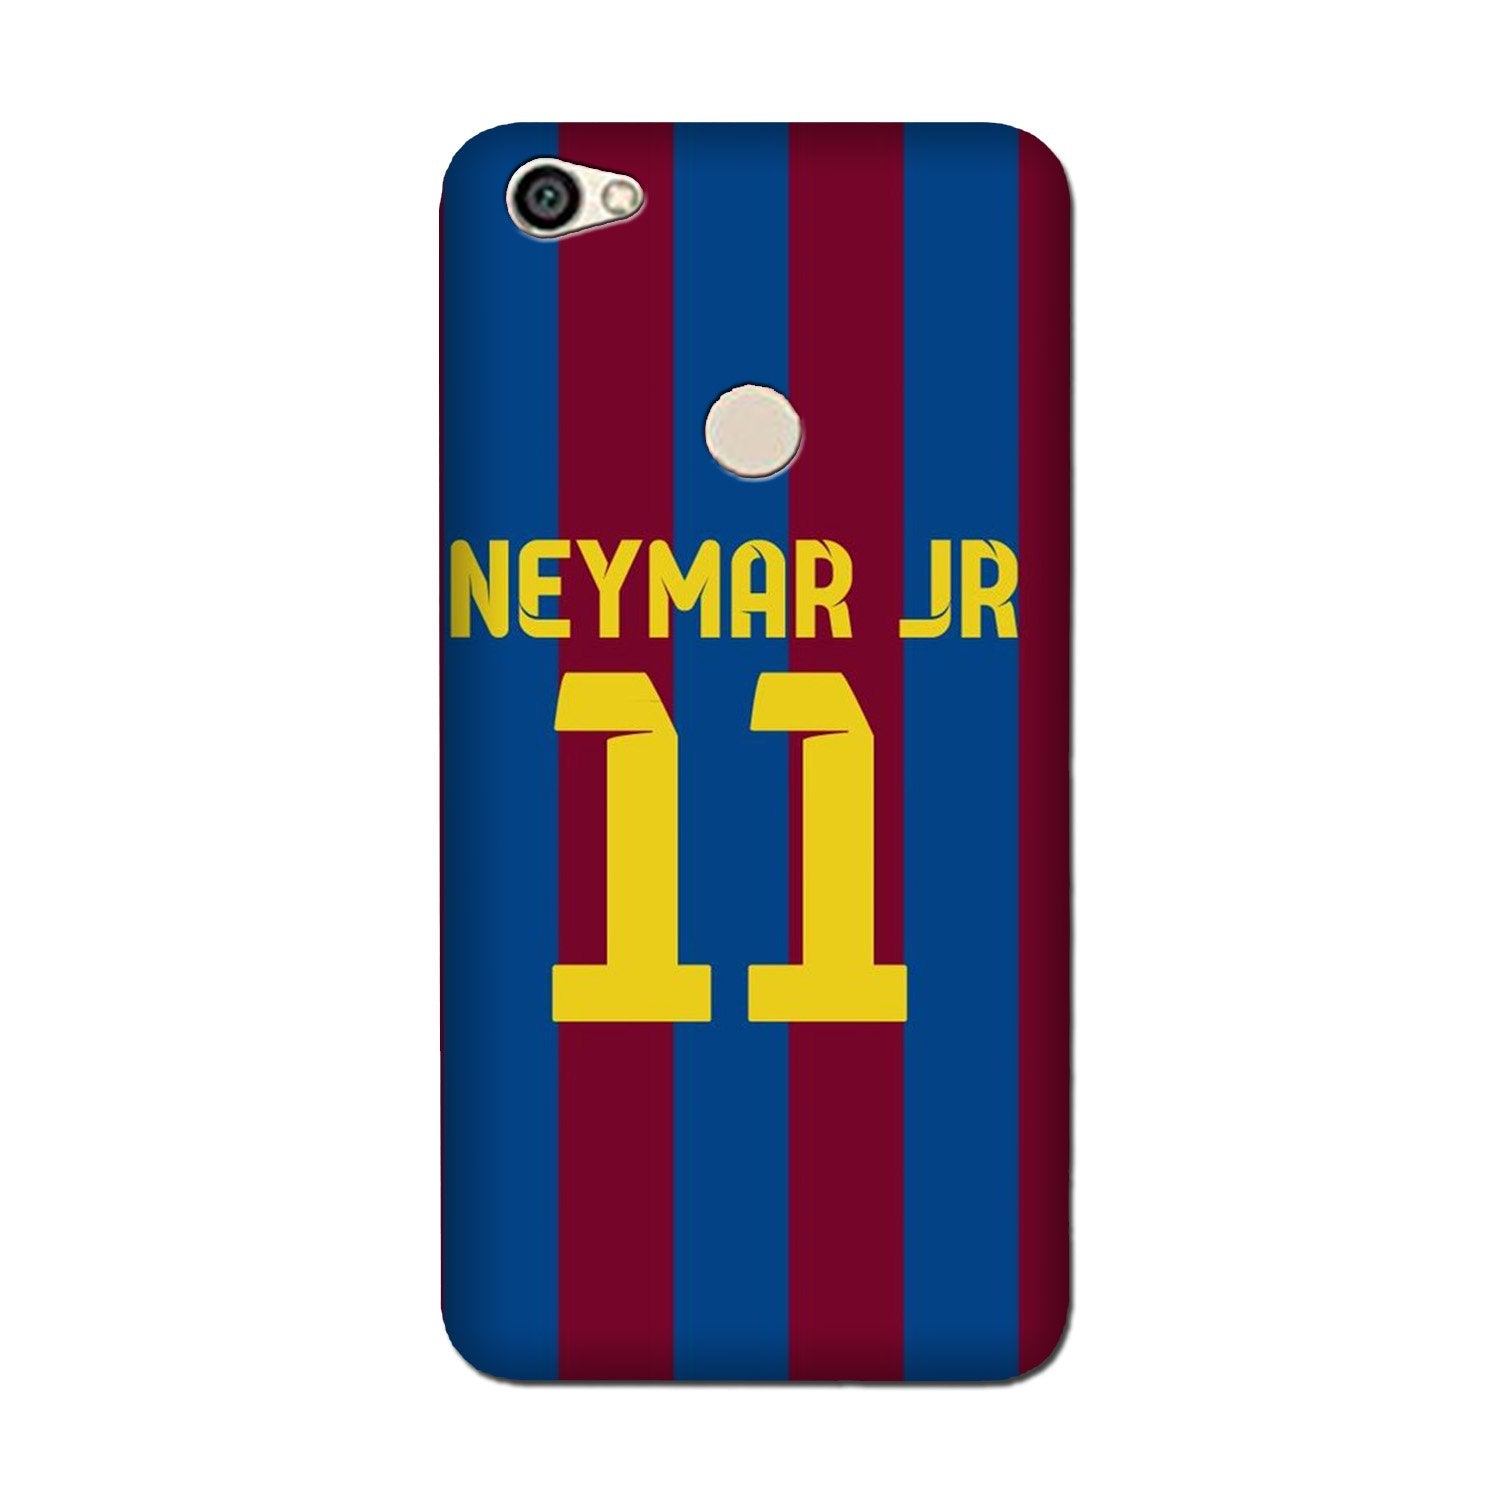 Neymar Jr Case for Oppo F7  (Design - 162)